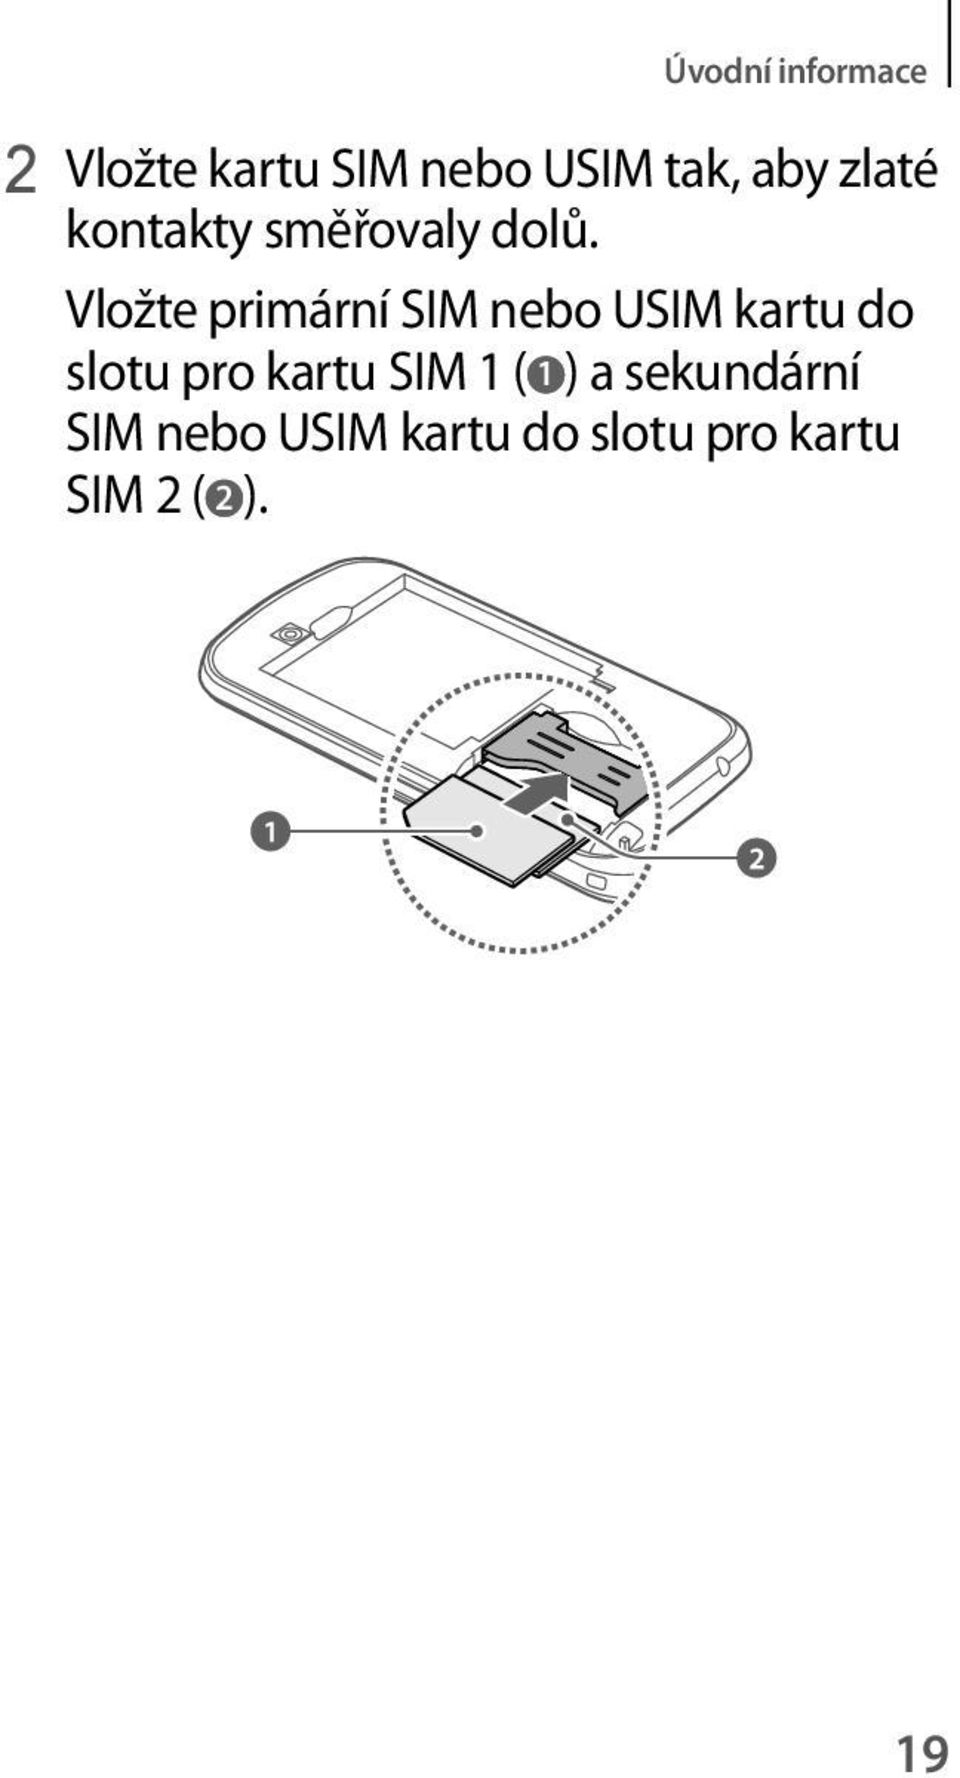 Vložte primární SIM nebo USIM kartu do slotu pro kartu